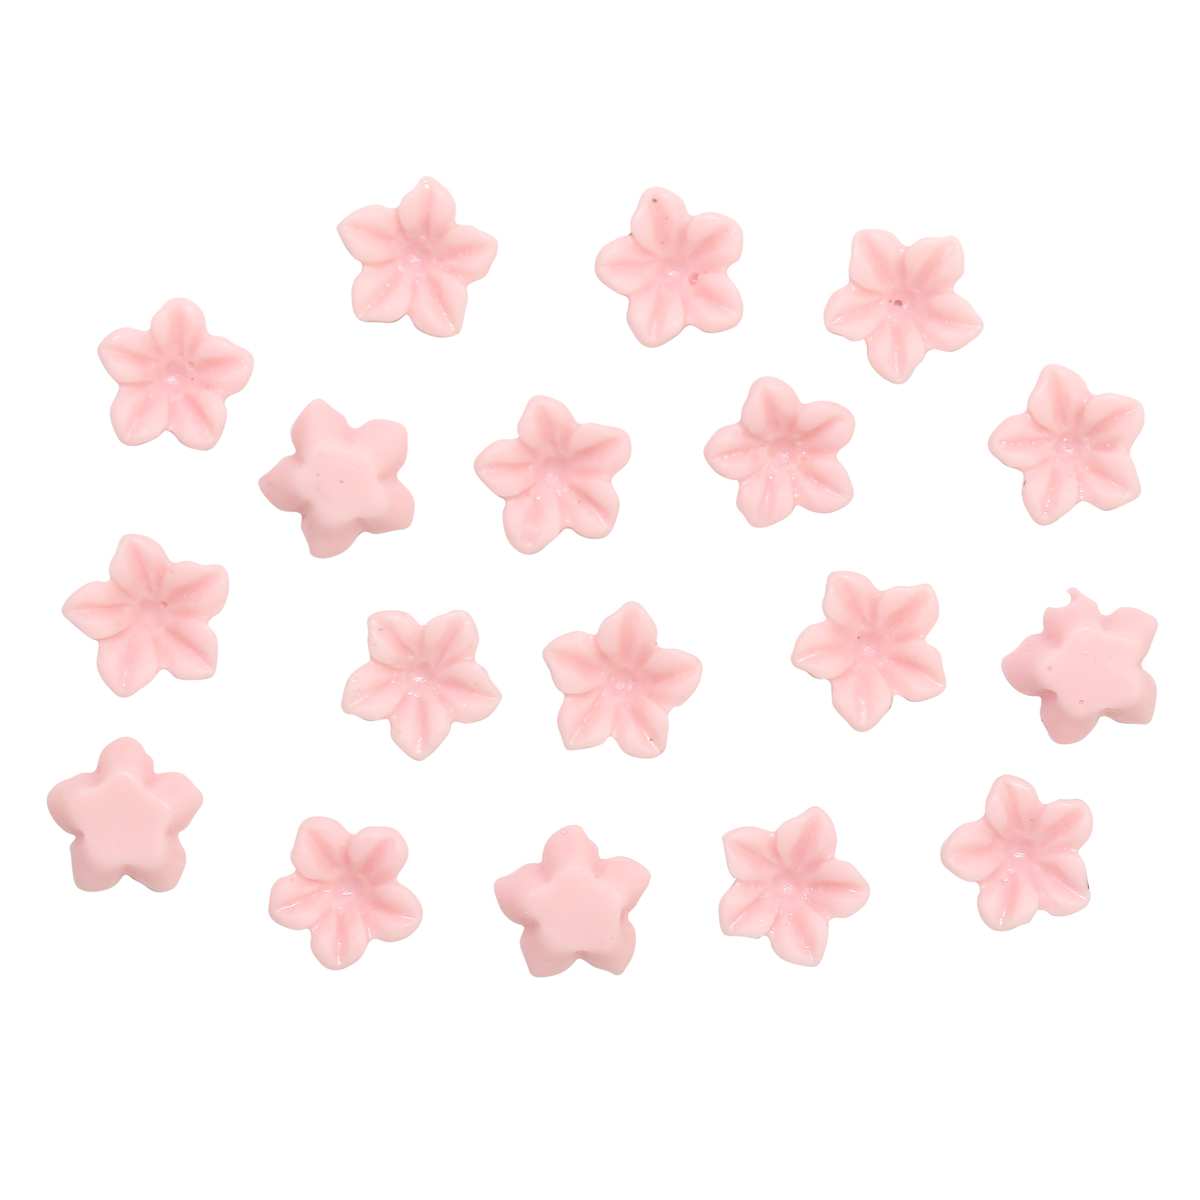 Набор цветов для скрапбукинга Astra&Craft, 6 мм, 20 штук (розовый)